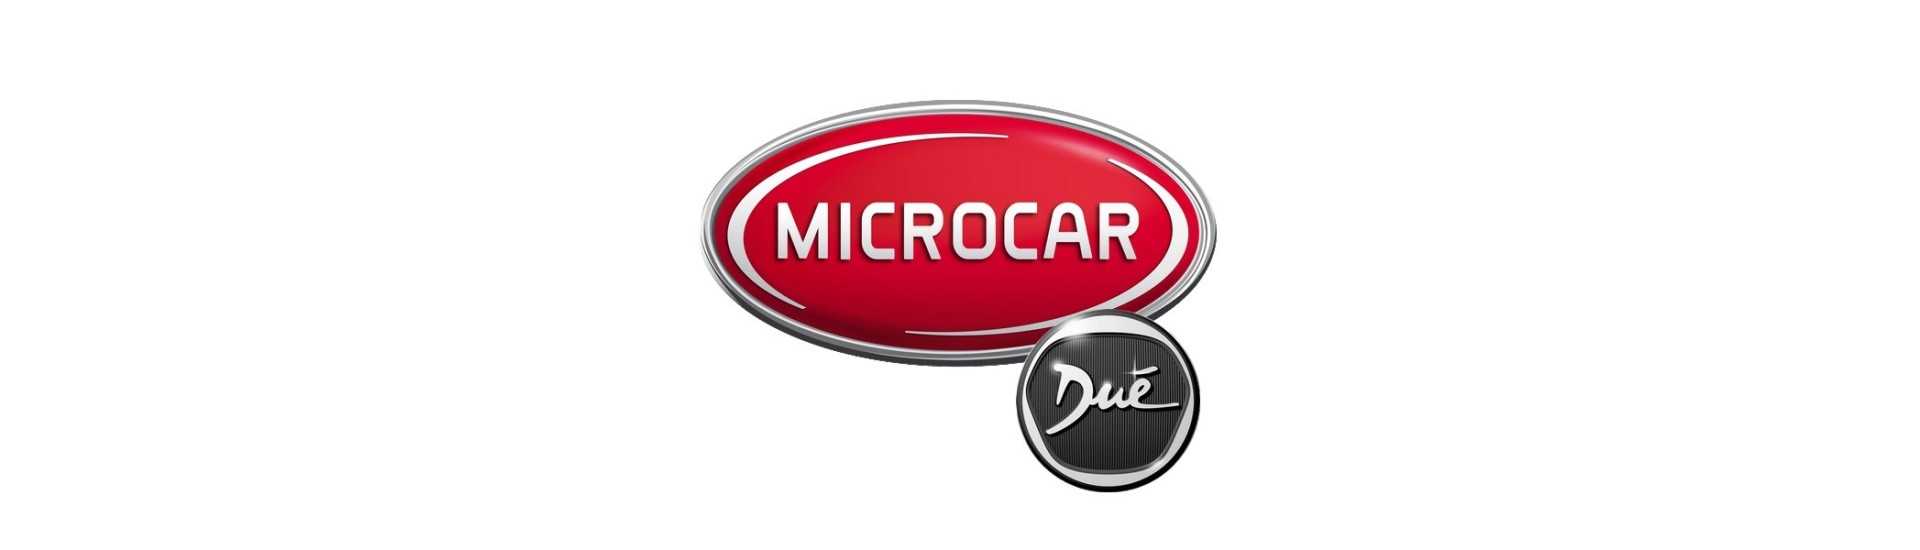 Kit de întreținere la cel mai bun preț pentru o mașină fără permis Microcar Dué